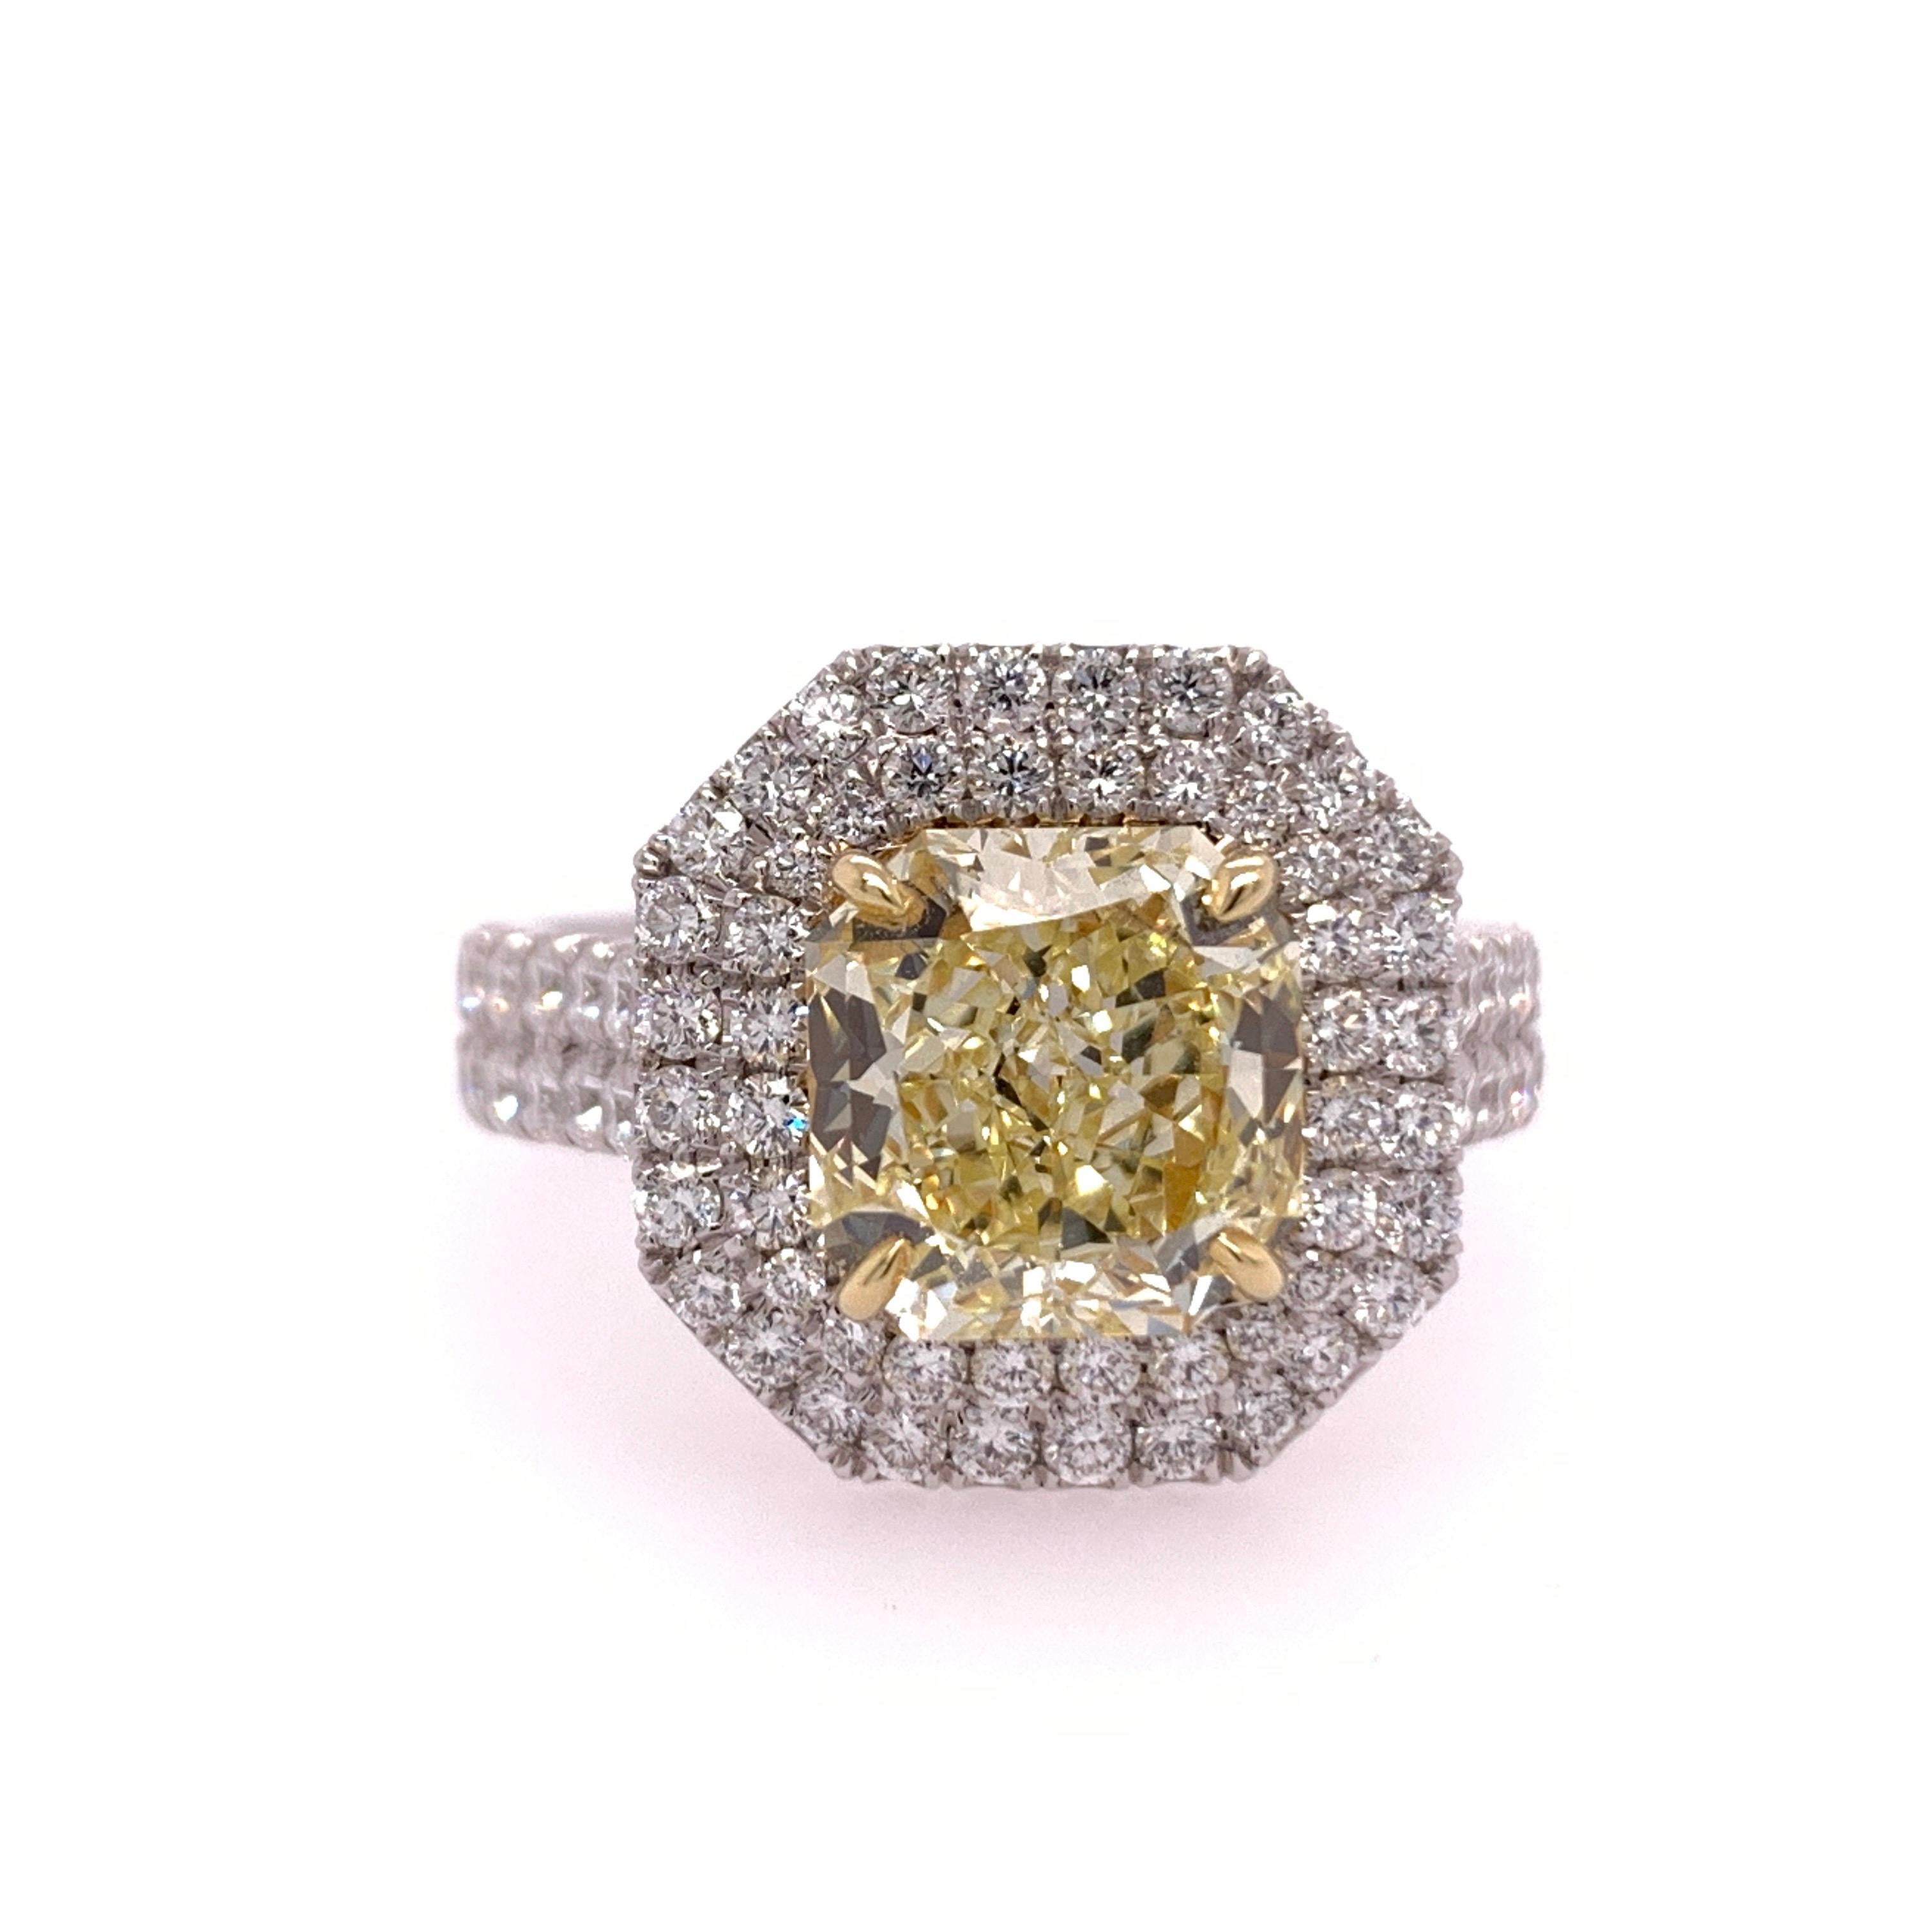 Radiant Cut Internally Flawless GIA Natural Fancy Yellow, ist der Ring mit 76 Natural Round Brilliant F VS Diamanten mit einem Gesamtgewicht von 1,01 Karat besetzt. 

Die Ringgröße ist 5,75+.

